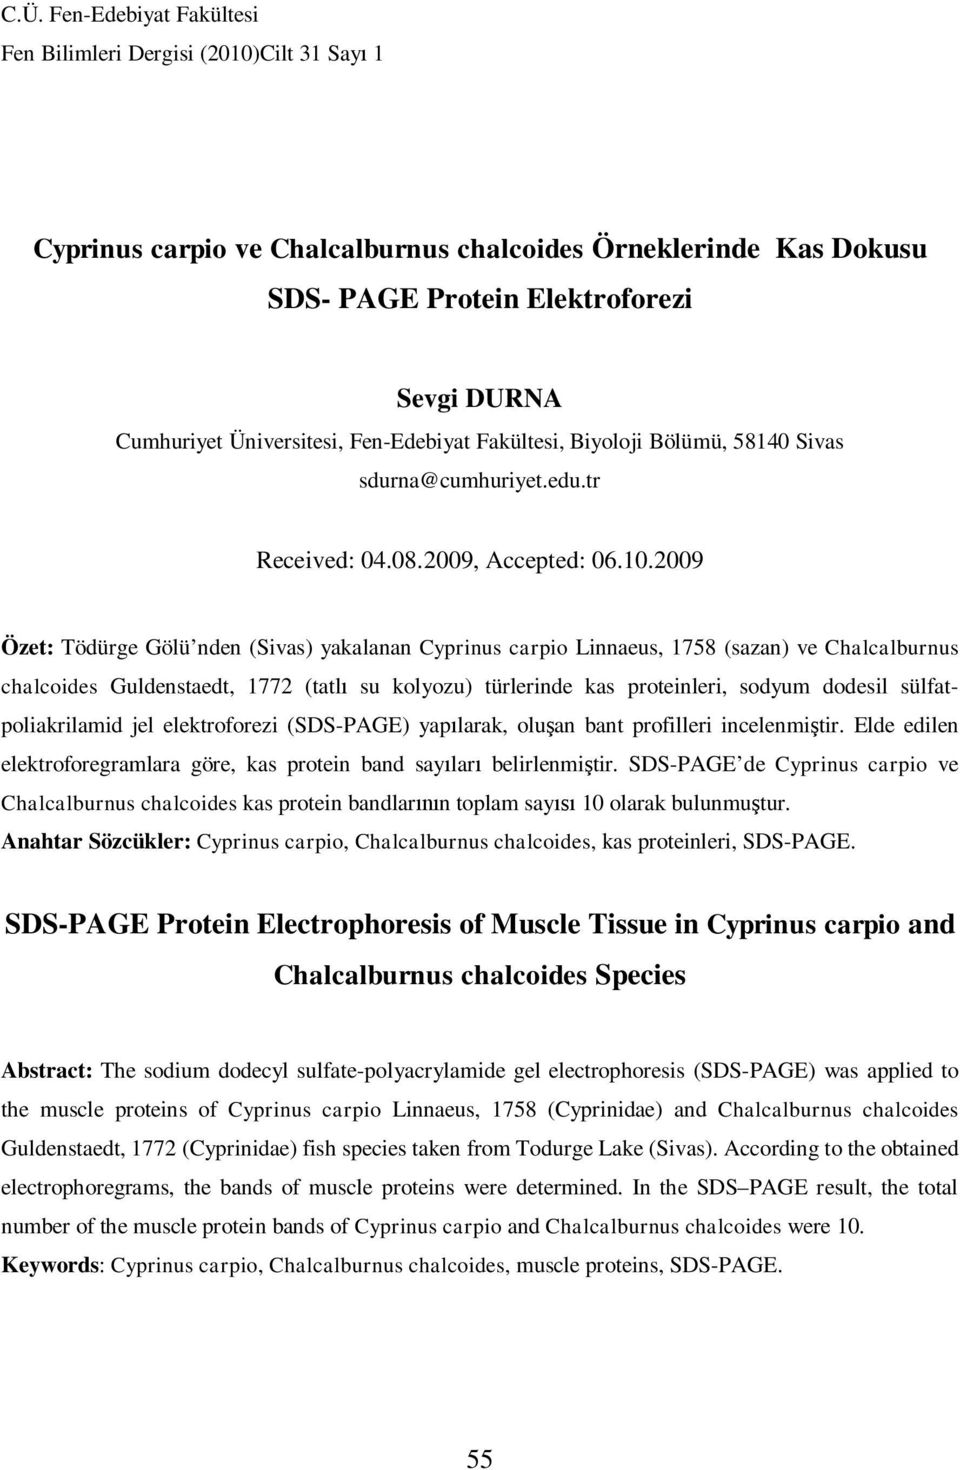 2009 Özet: Tödürge Gölü nden (Sivas) yakalanan Cyprinus carpio Linnaeus, 1758 (sazan) ve Chalcalburnus chalcoides Guldenstaedt, 1772 (tatl su kolyozu) türlerinde kas proteinleri, sodyum dodesil